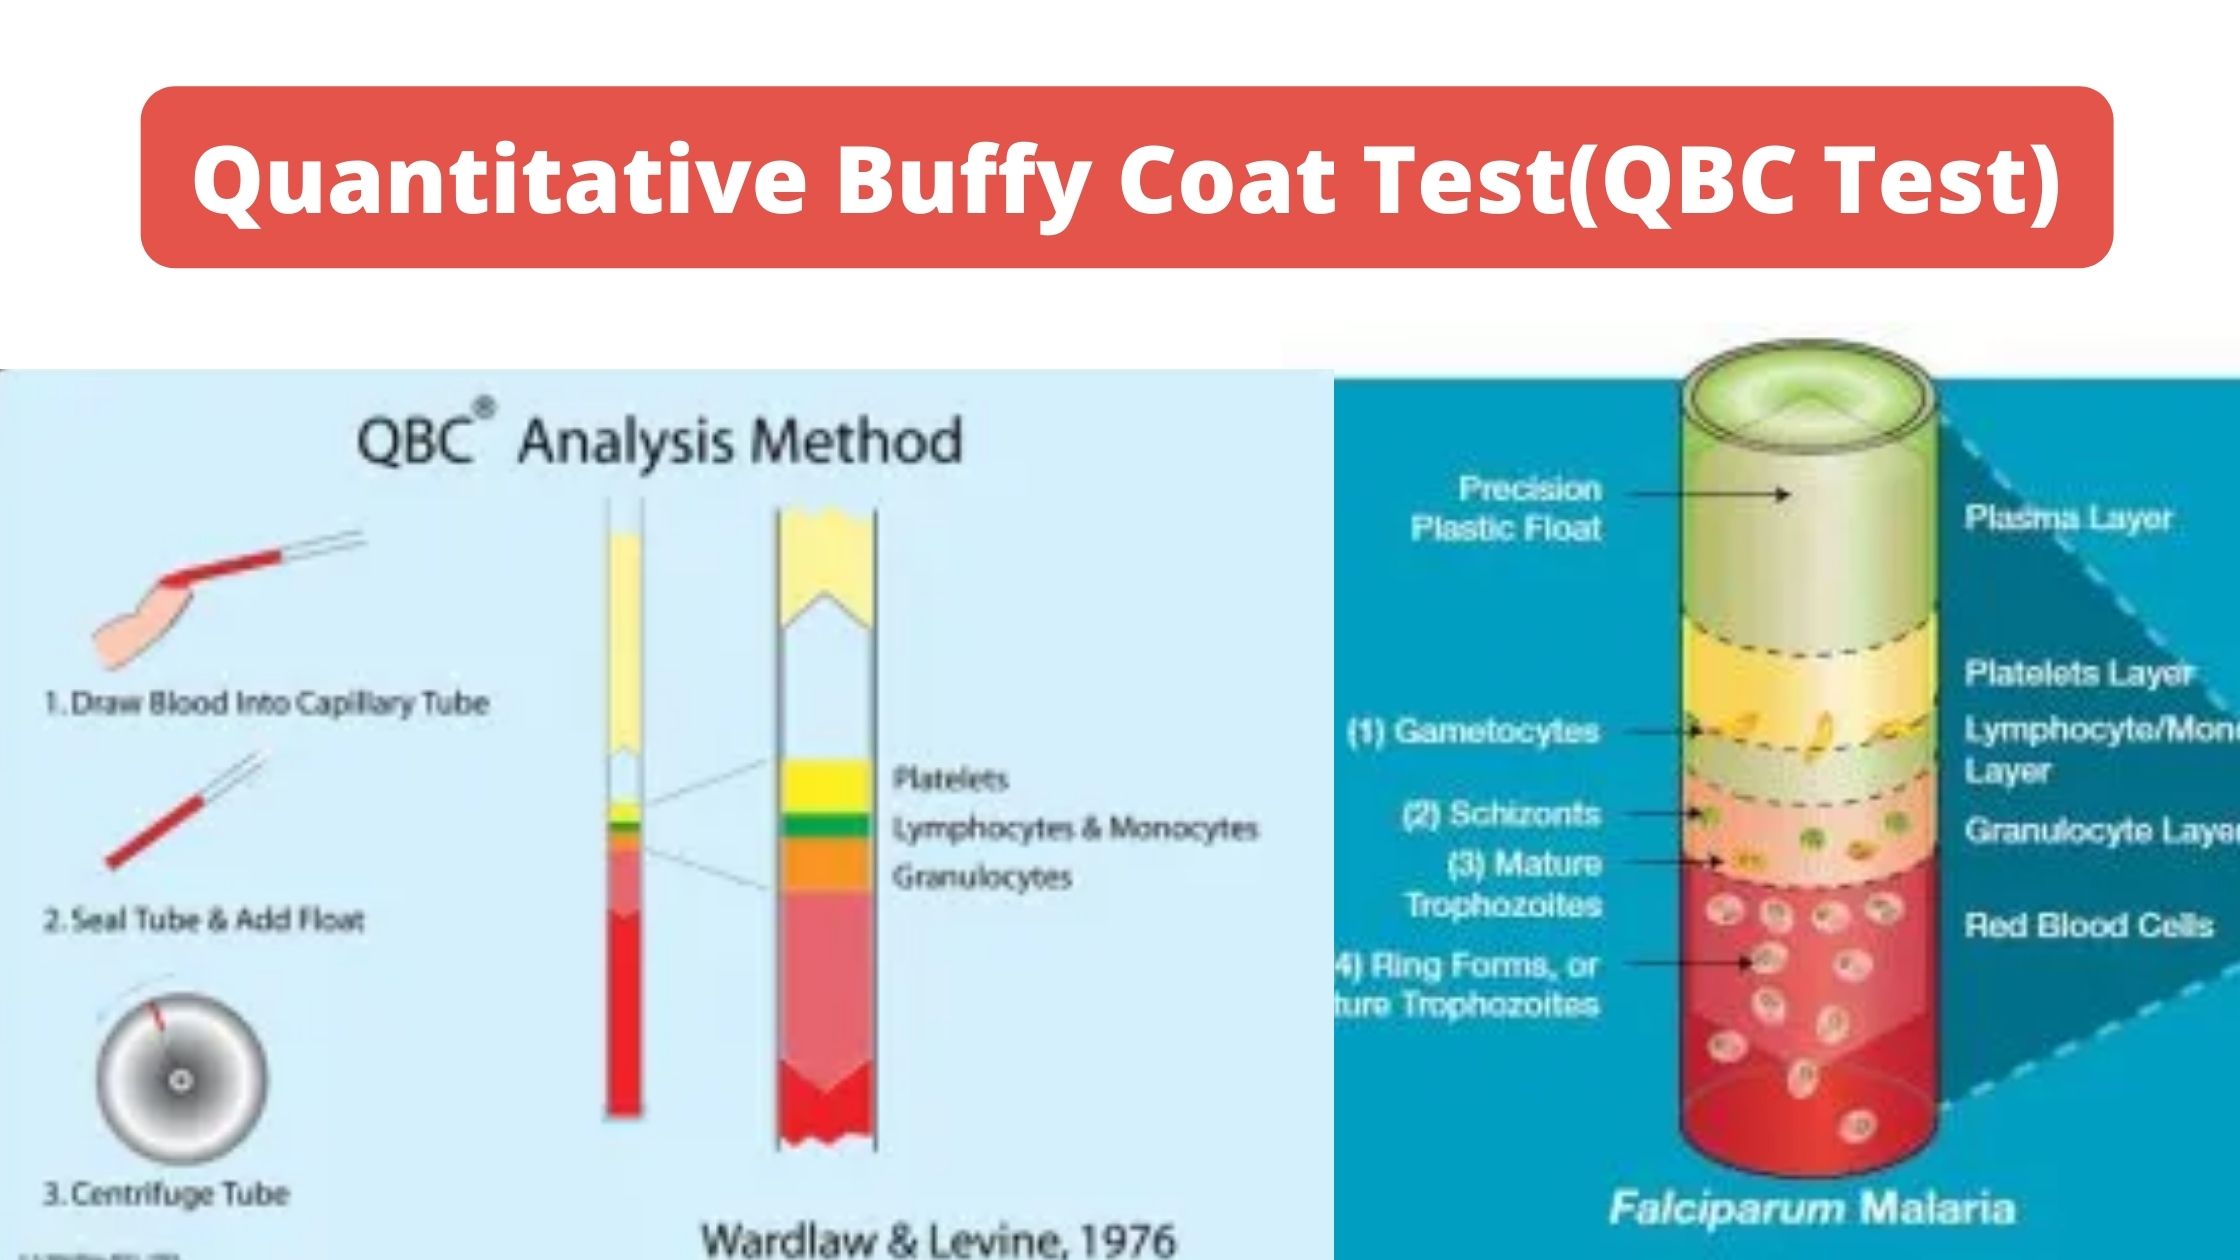 Quantitative Buffy Coat Test(QBC Test)